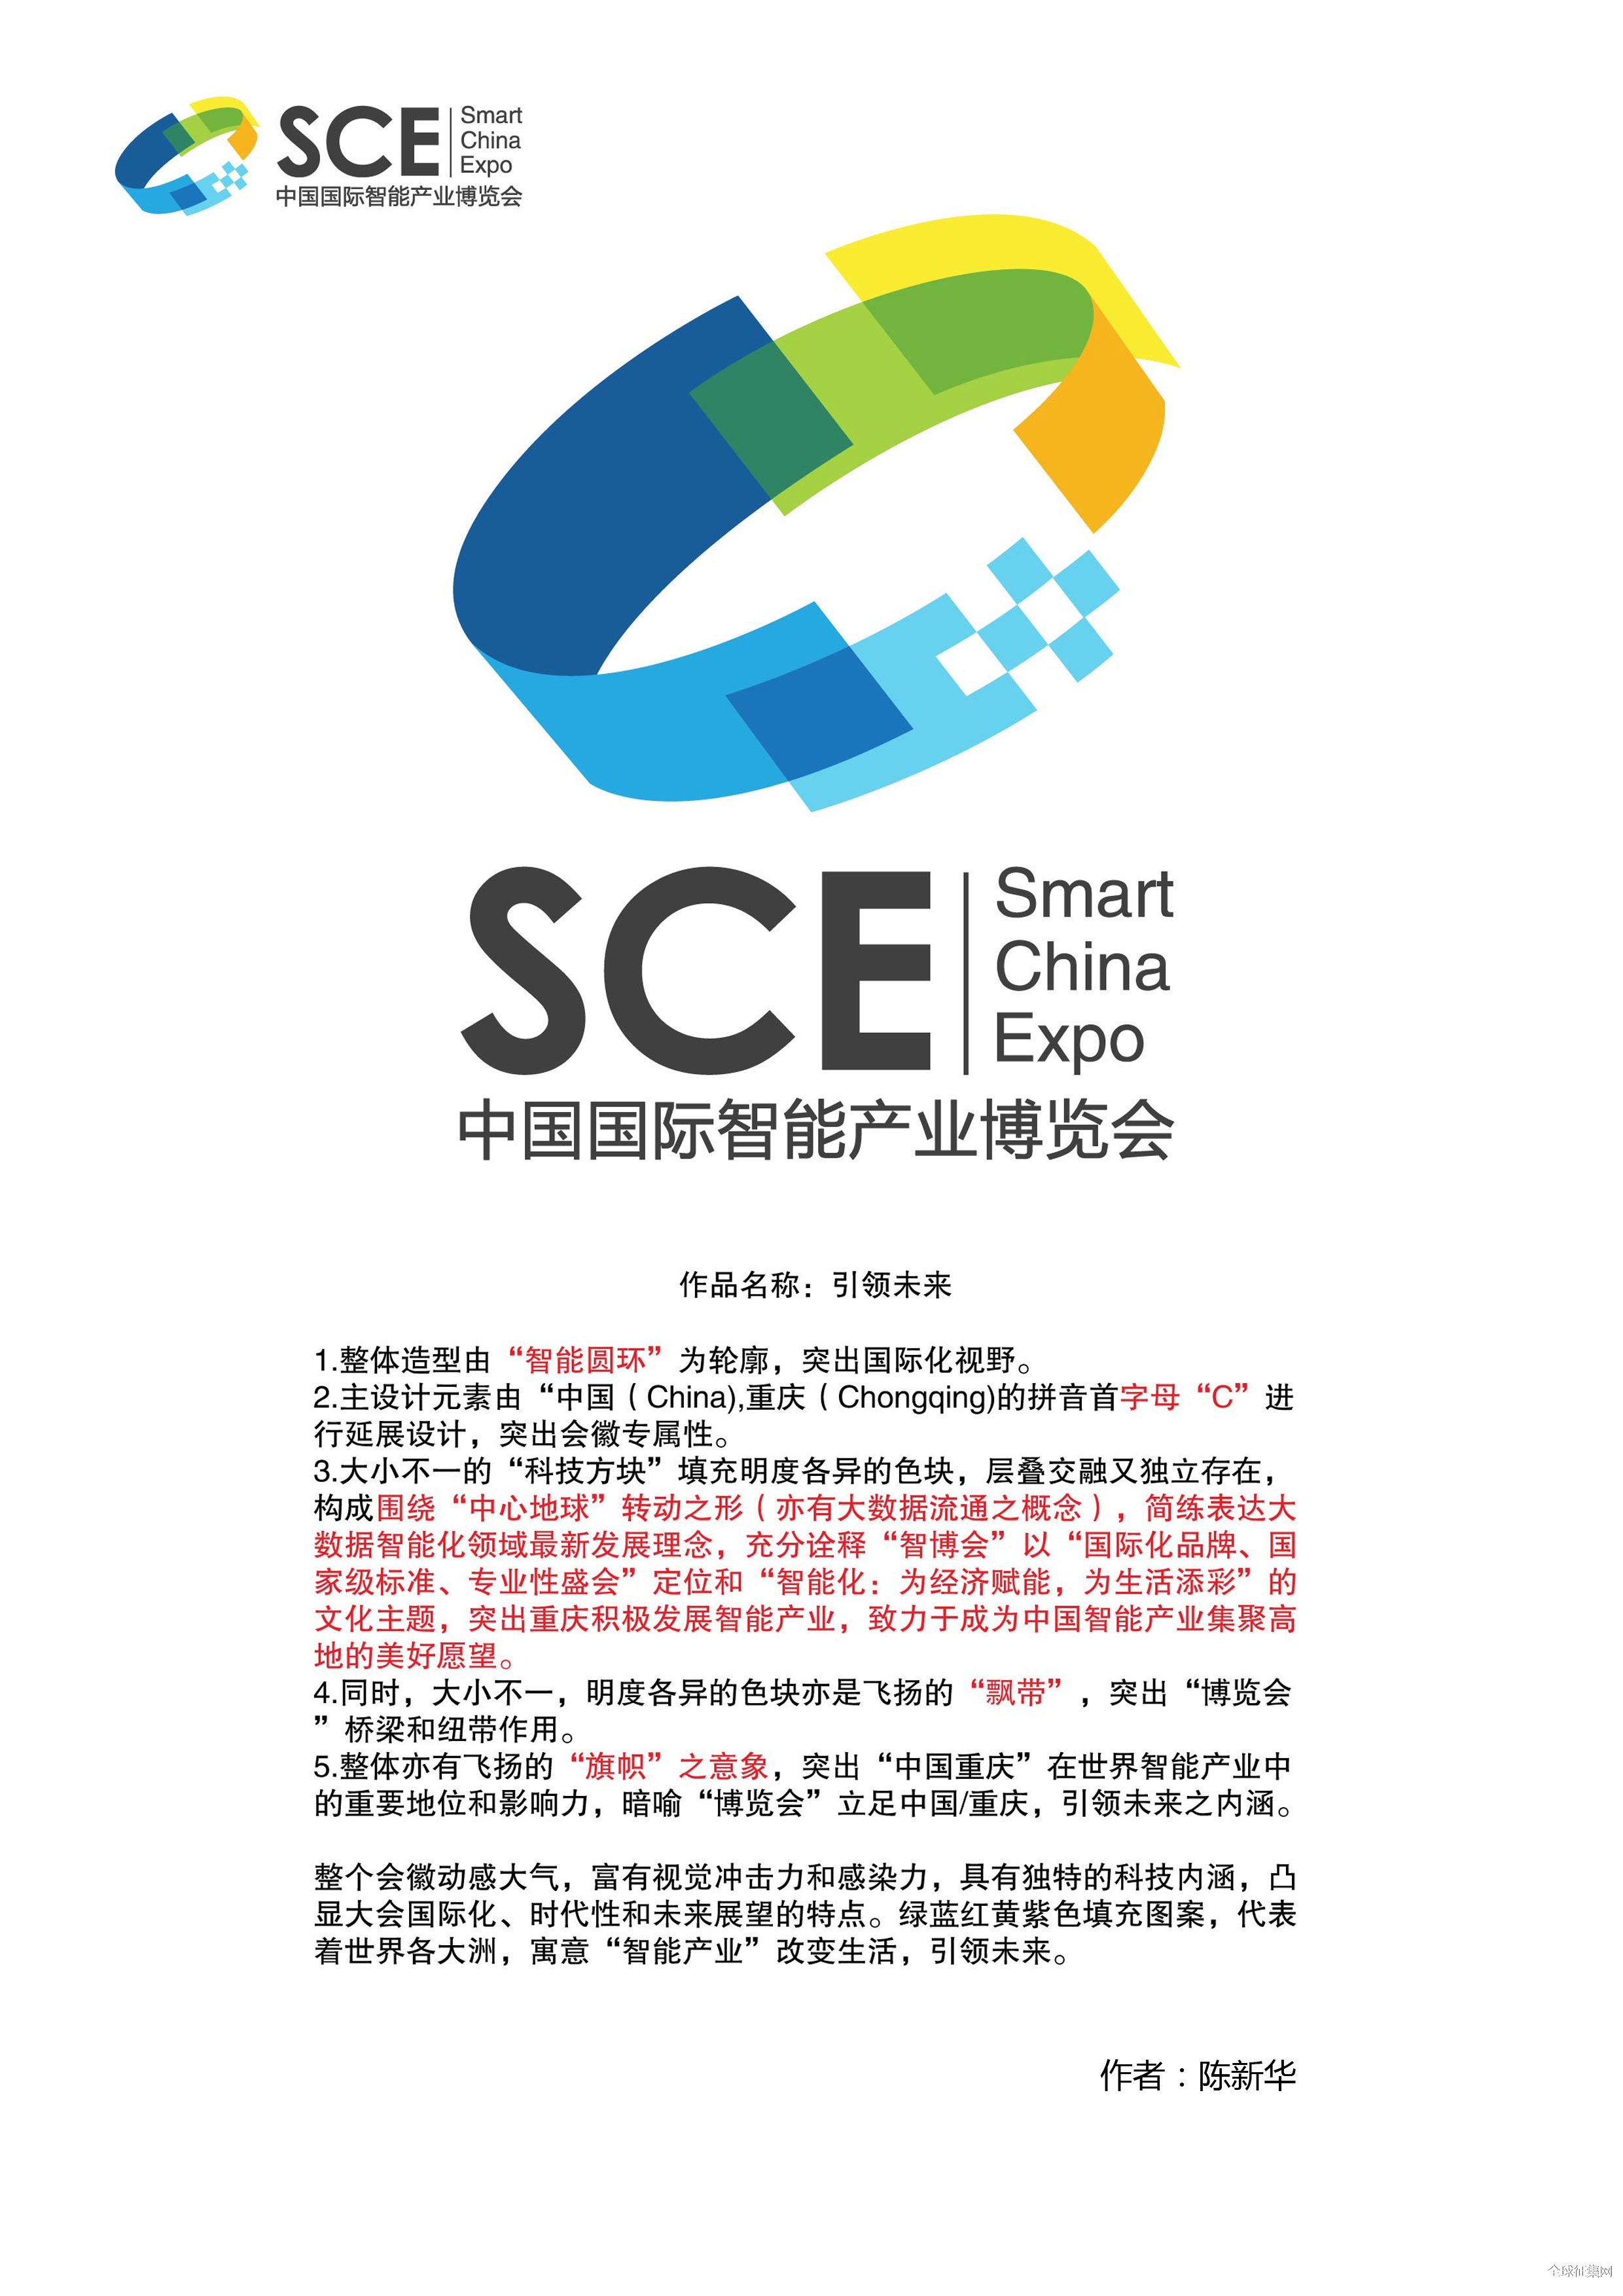 中国国际智能产业博览会徽标(logo)征集结果公示